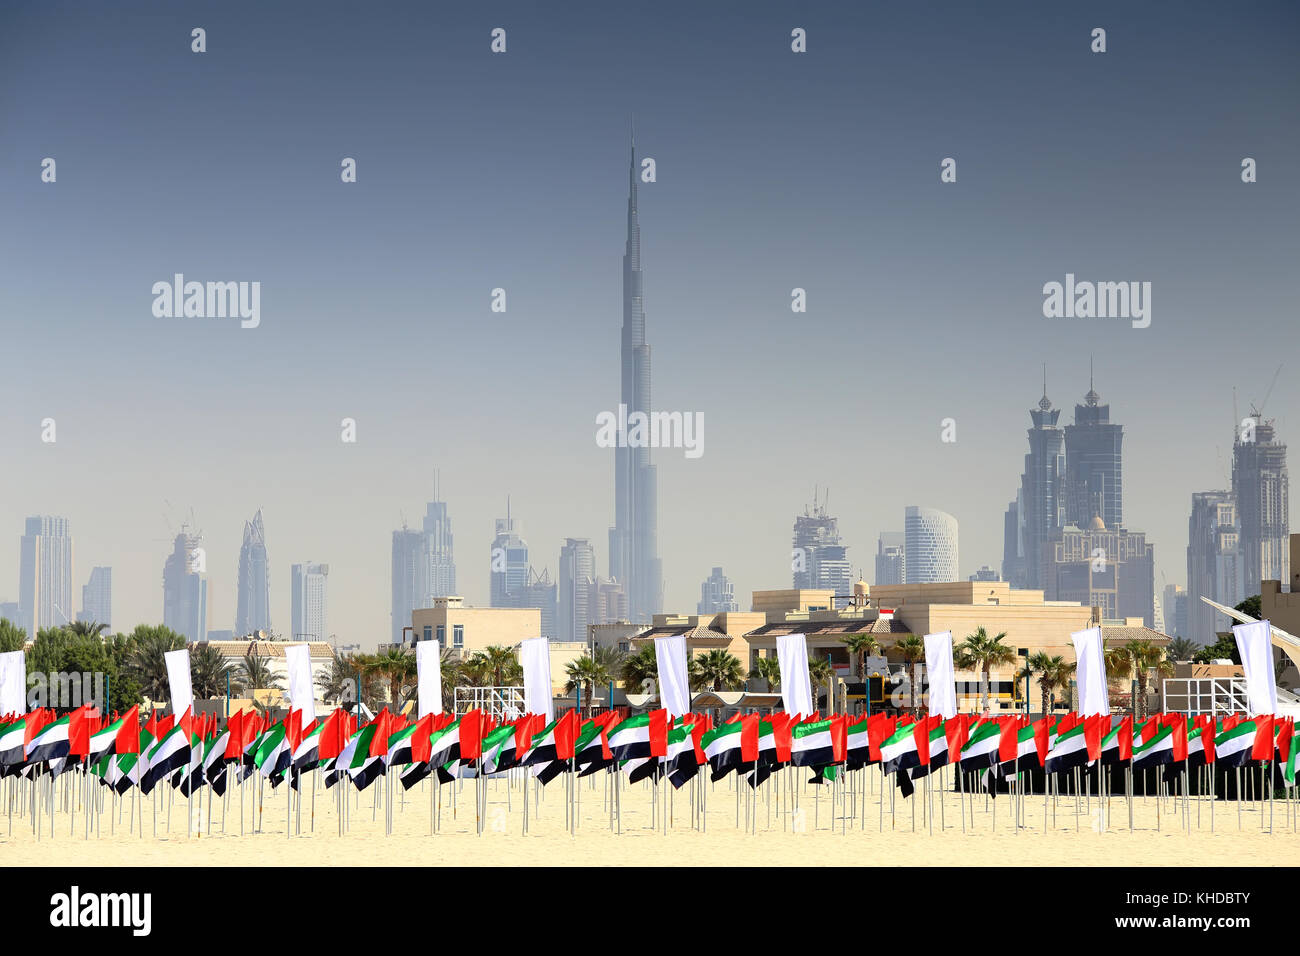 UAE flags on Dubai skyline background. National UAE flag day. Stock Photo